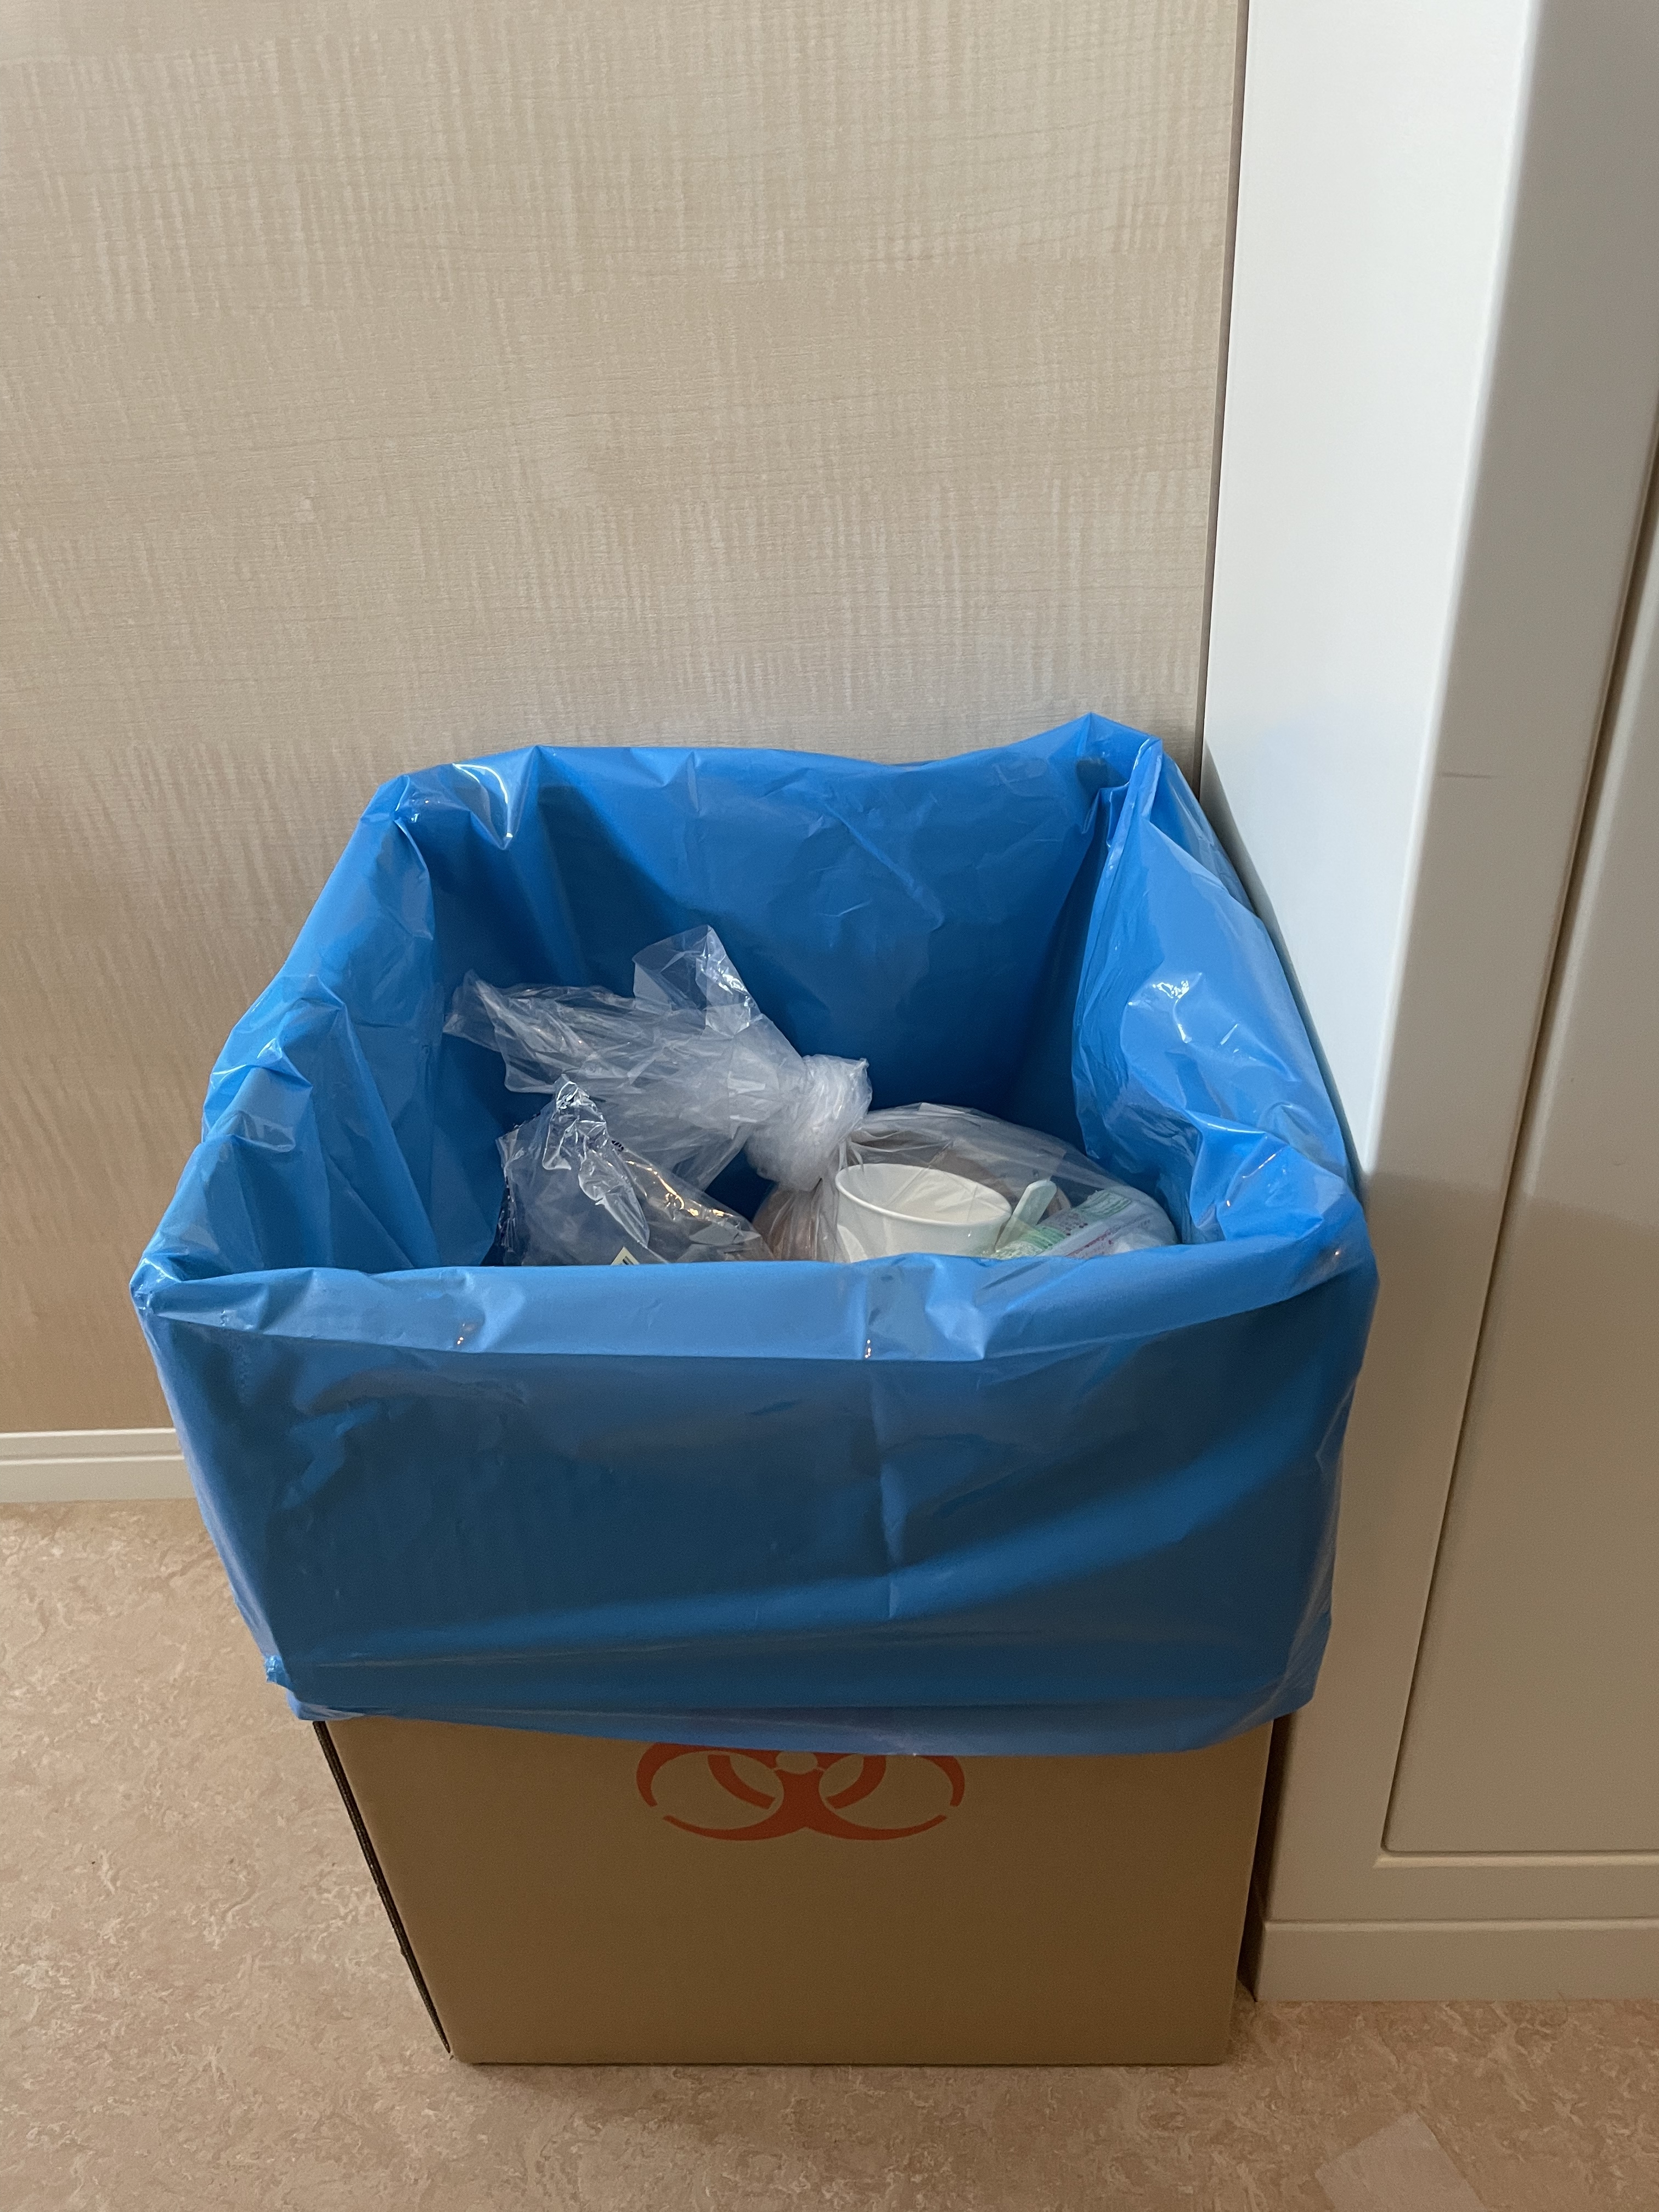 愛育病院のコロナ感染対策のゴミ箱の写真